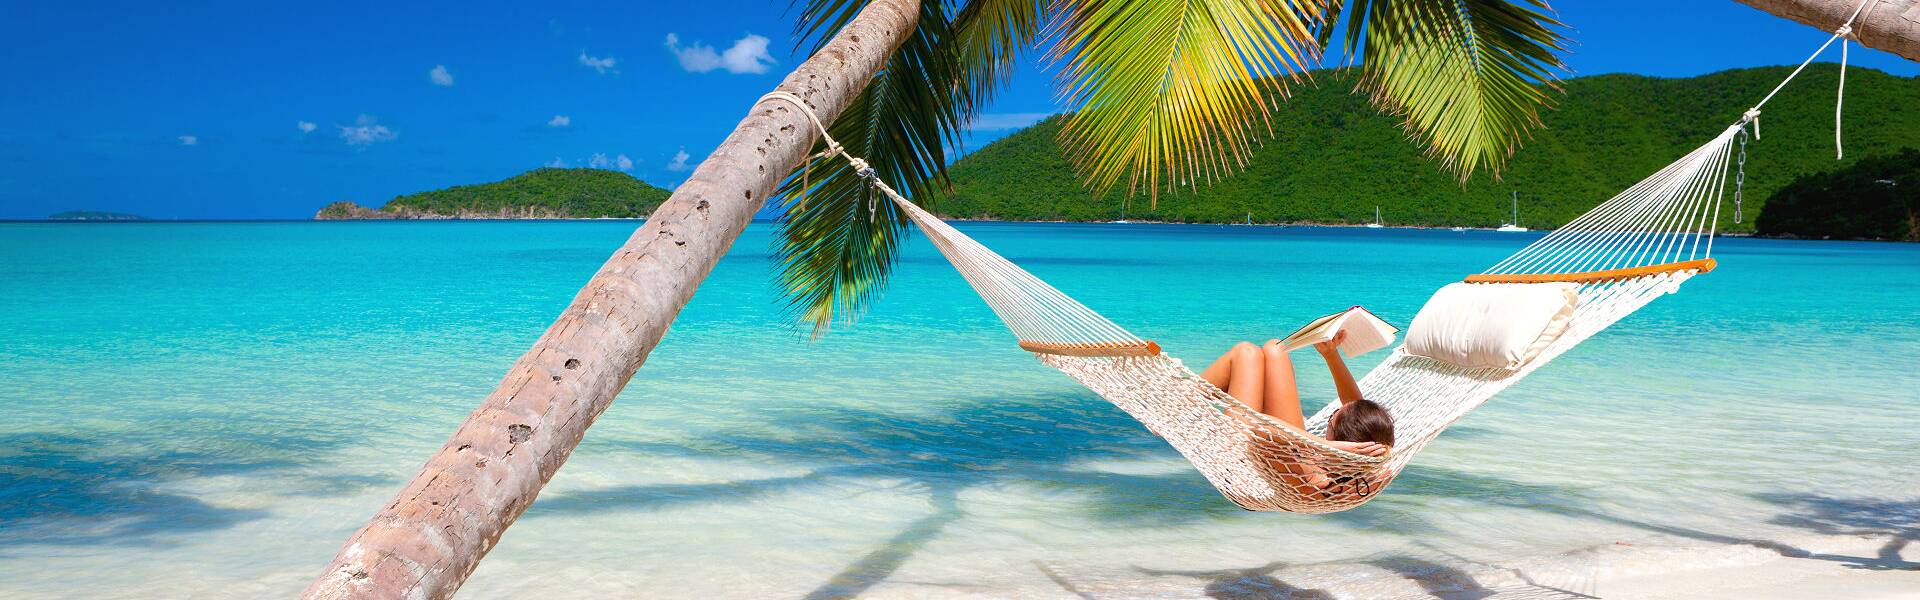 Planen Sie mit uns Ihren privaten Mauritius Urlaub